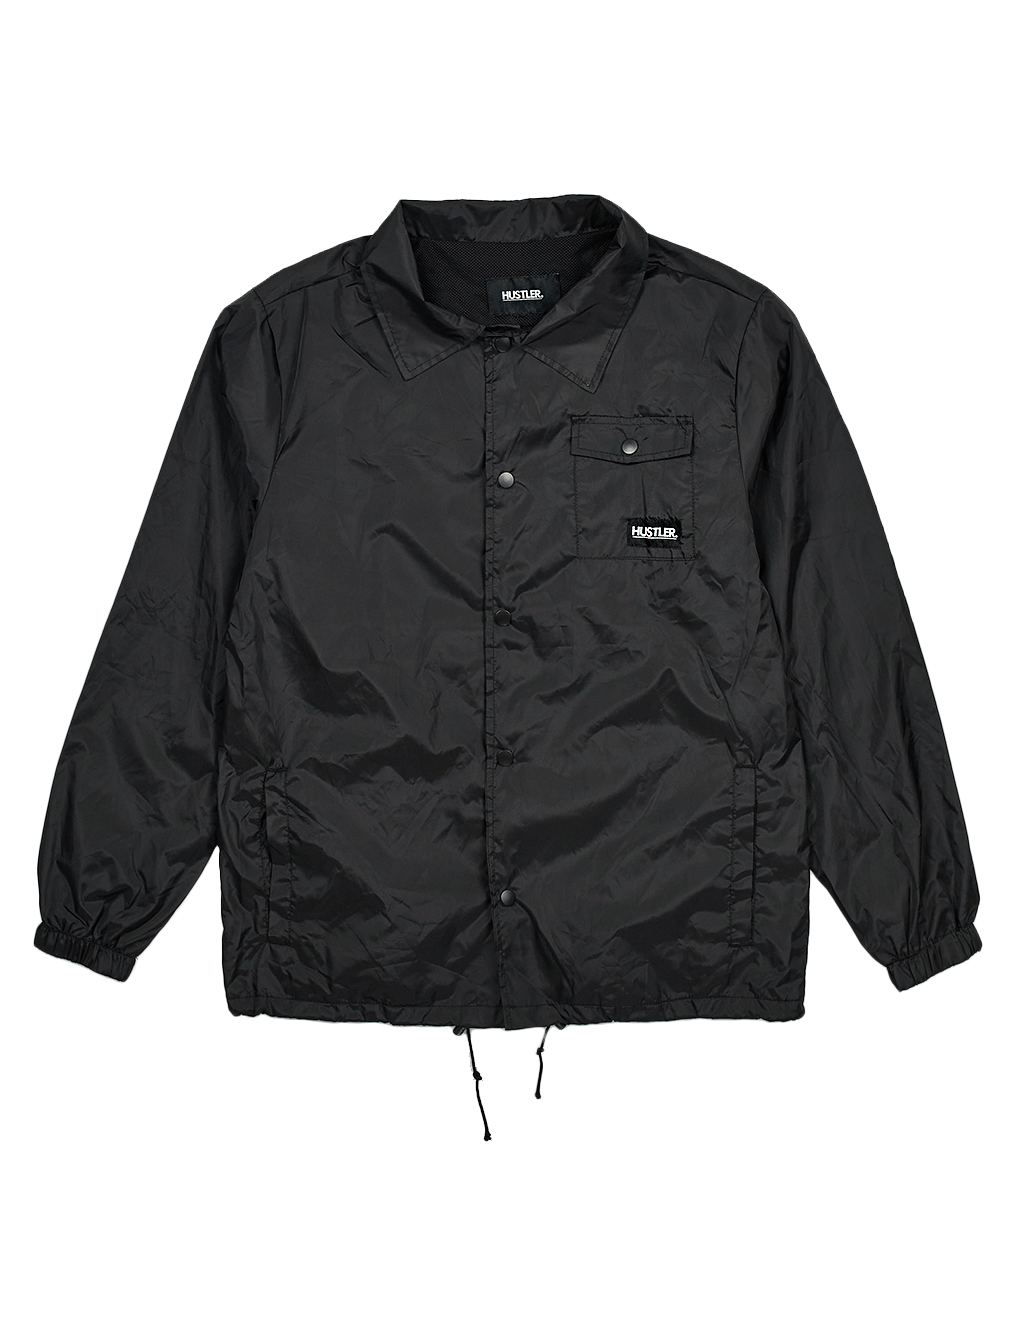 HUSTLER® Coaches Jacket - Black - Front